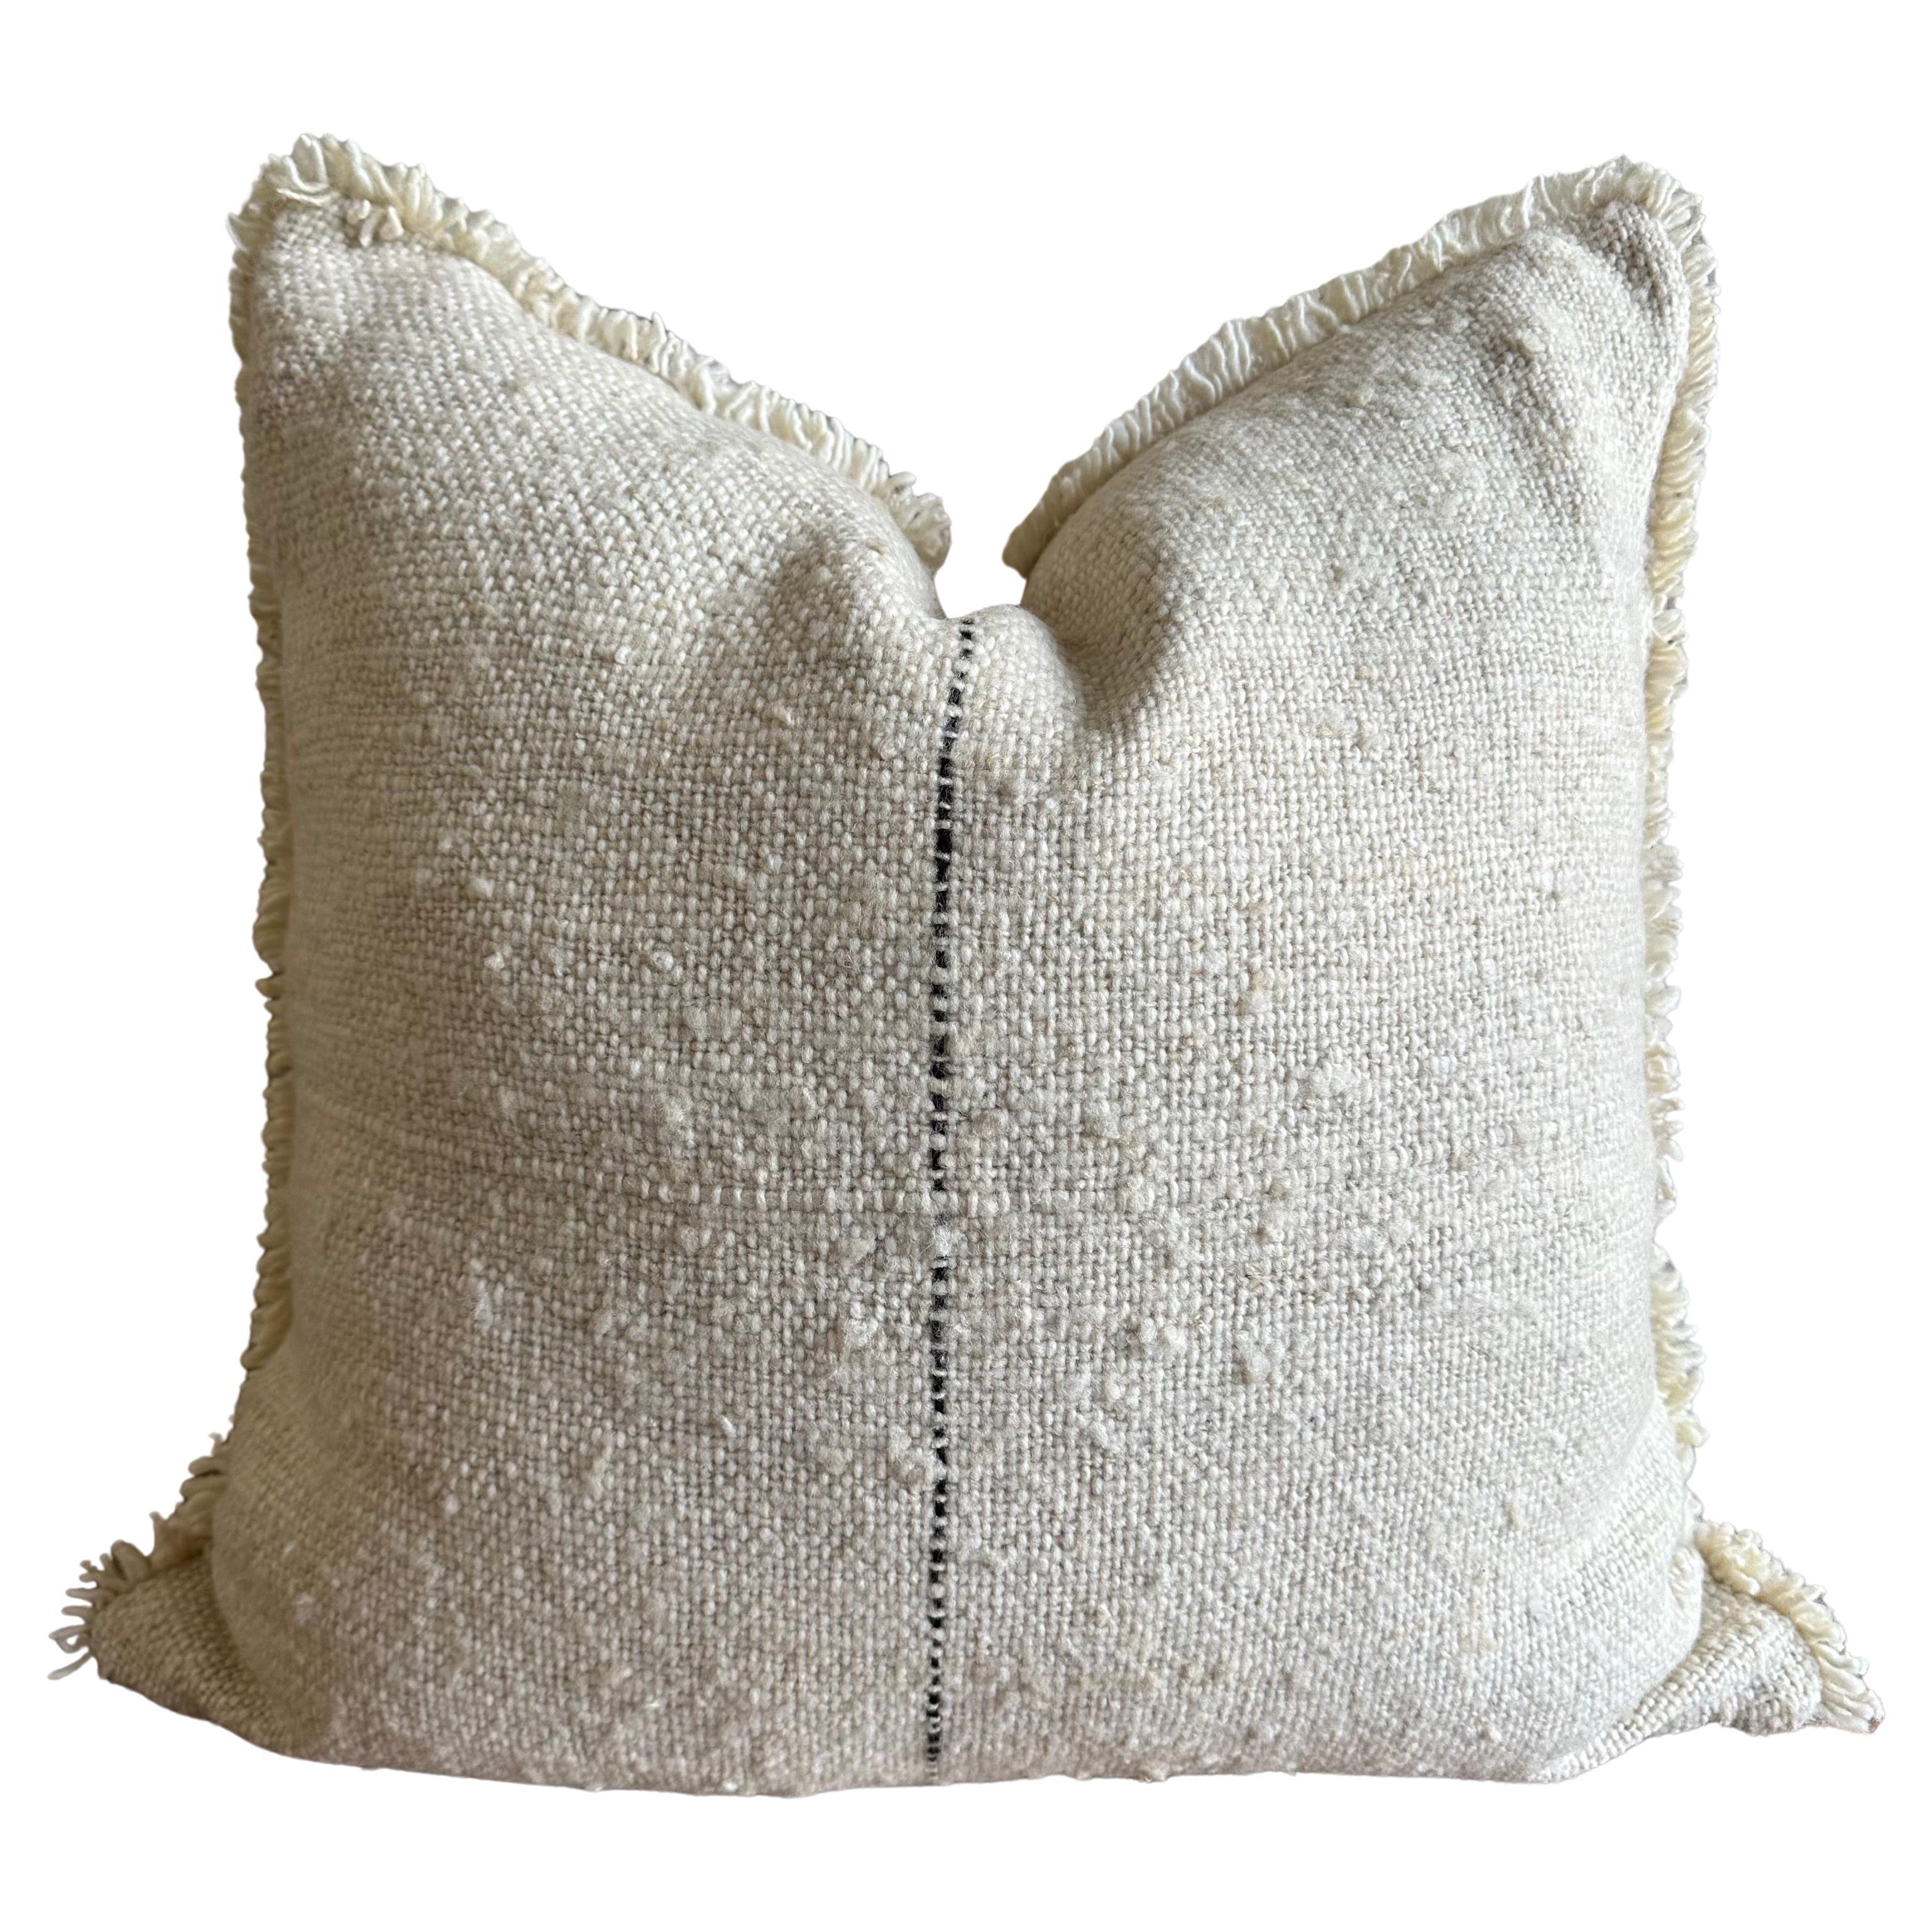 Individuelles Karu Woven Wool Pillow in Haferflocken mit schwarzen Streifen